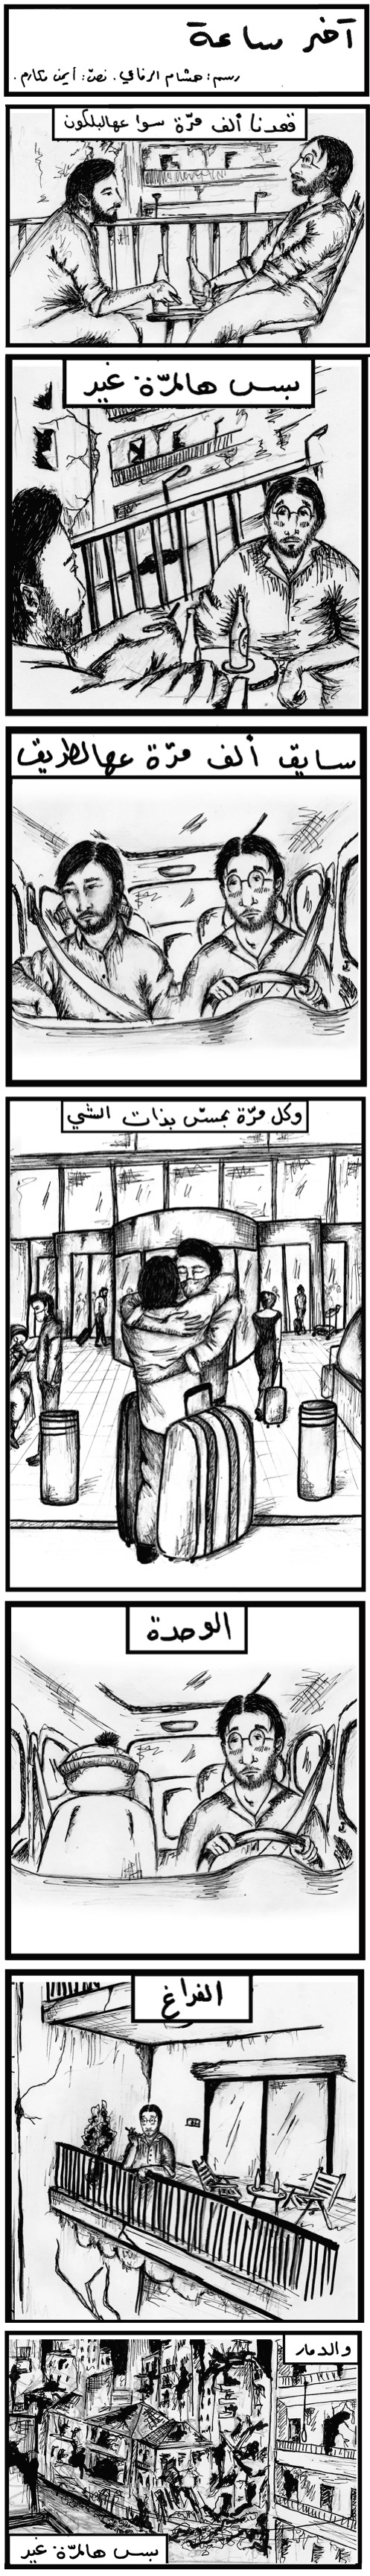 آخر ساعة. رسم هشام الرفاعي. نصّ أيمن مكارم. 